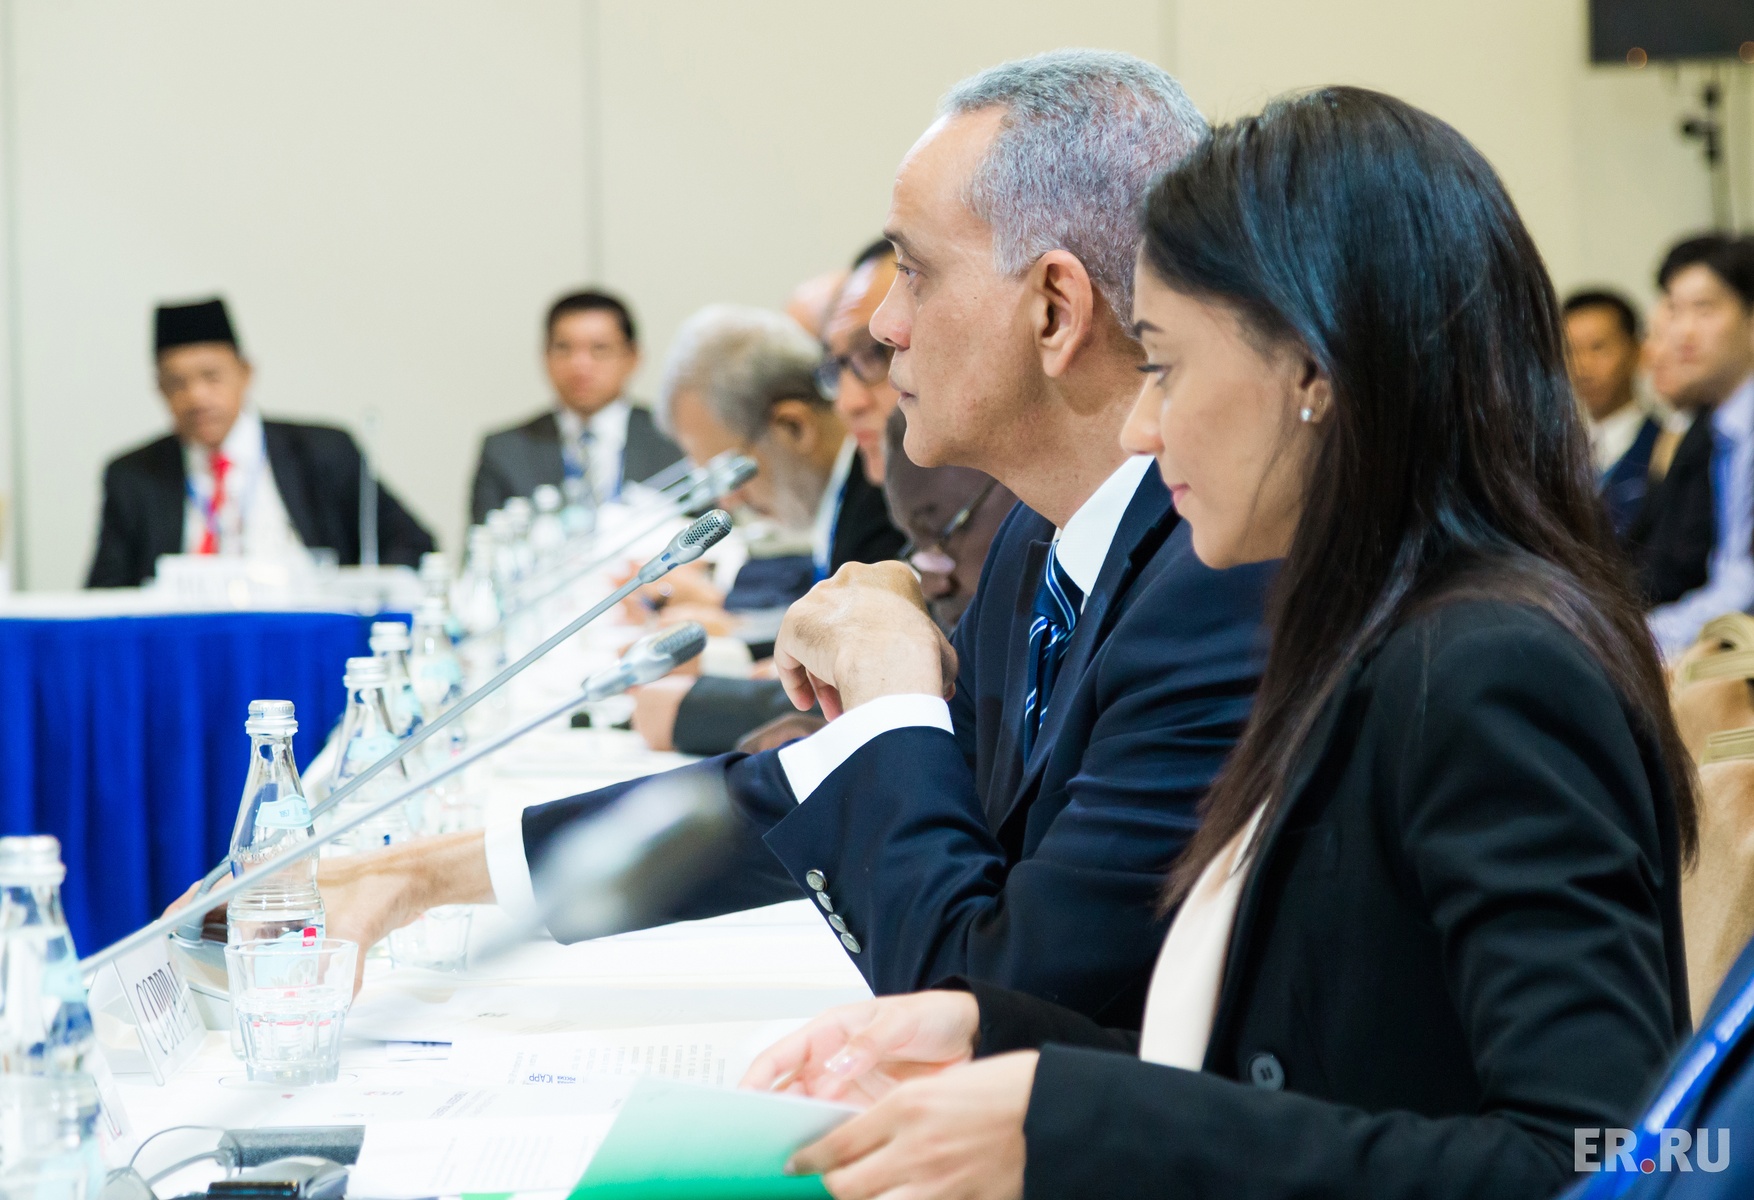  Заседание Координационного комитета по трехстороннему сотрудничеству между МКАПП, COPPPAL и СAPP